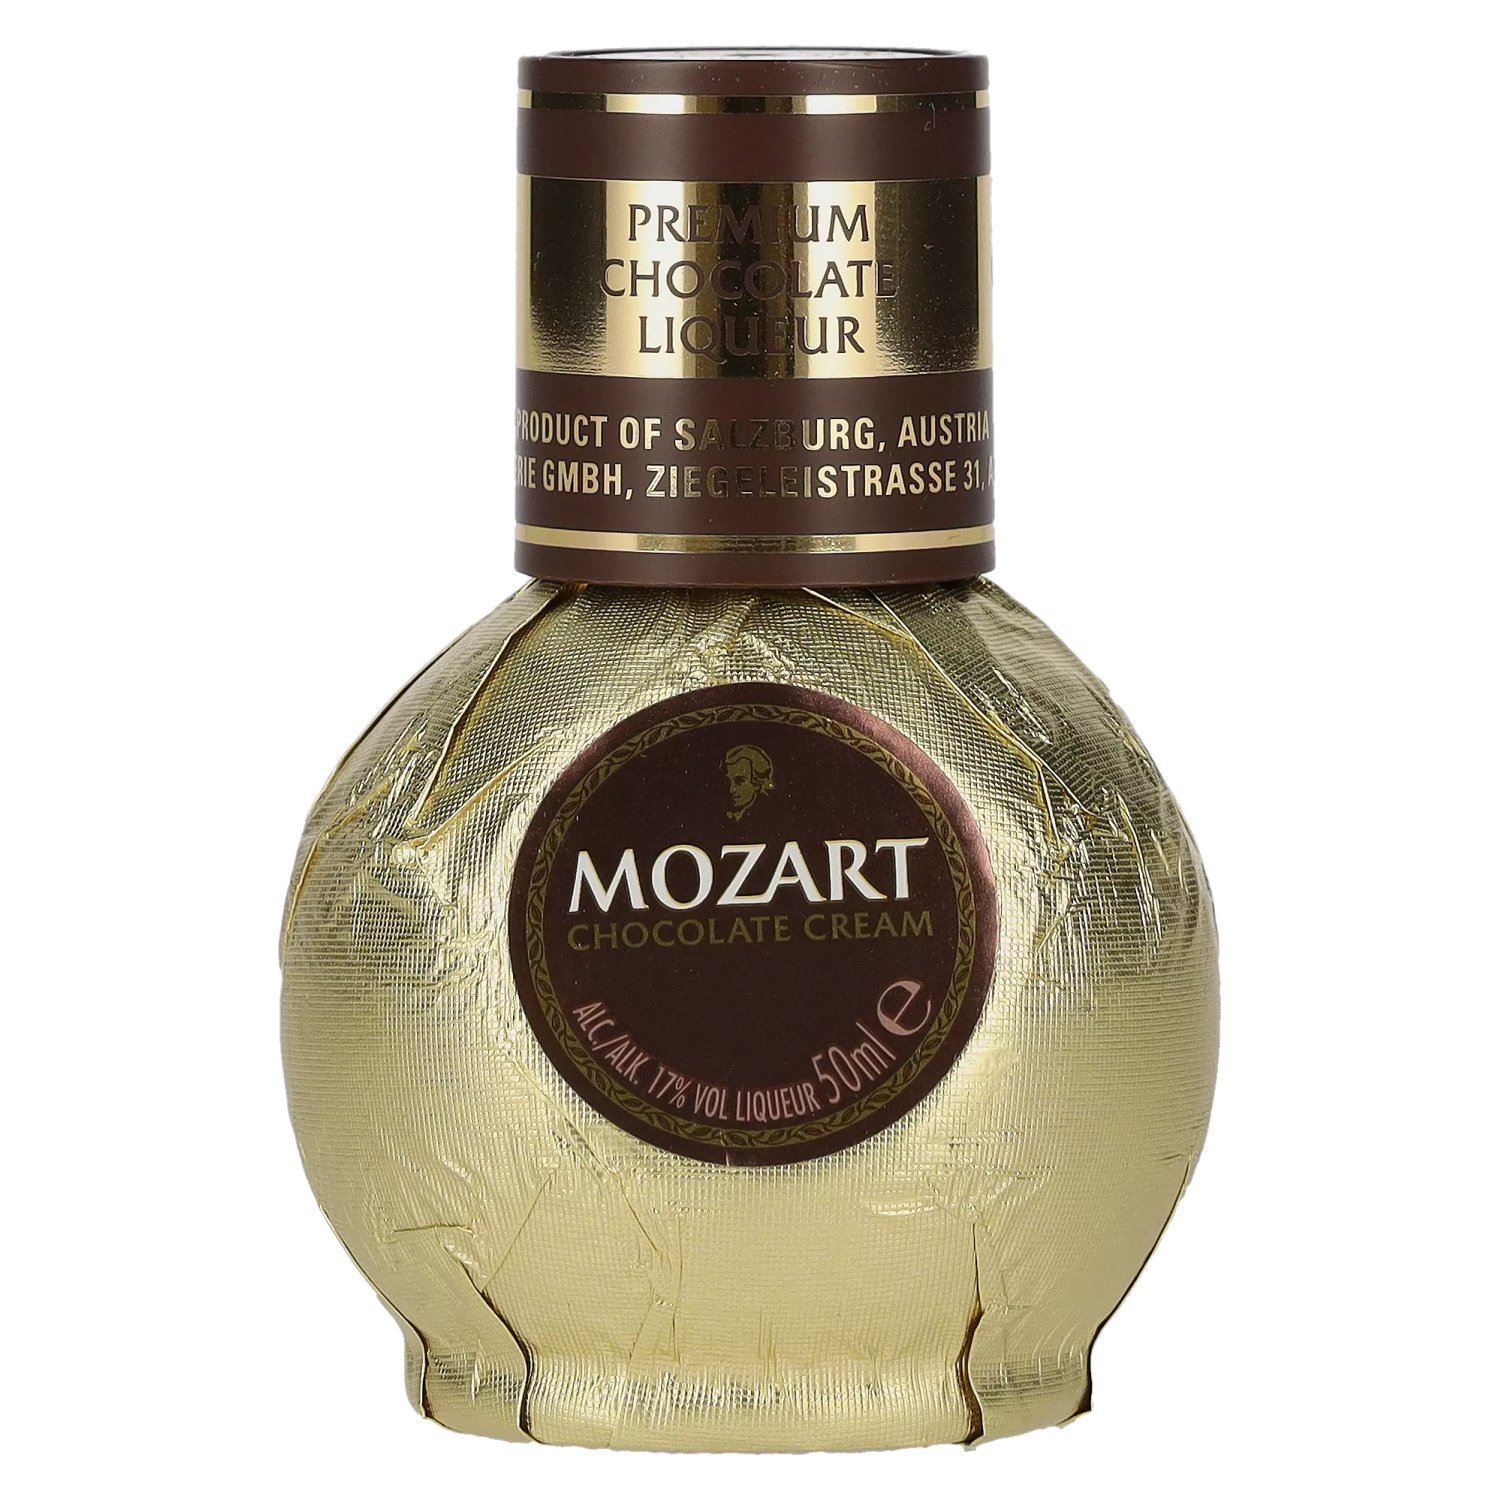 Mozart Gold Chocolate Cream 17% Vol. delicando - 0,05l